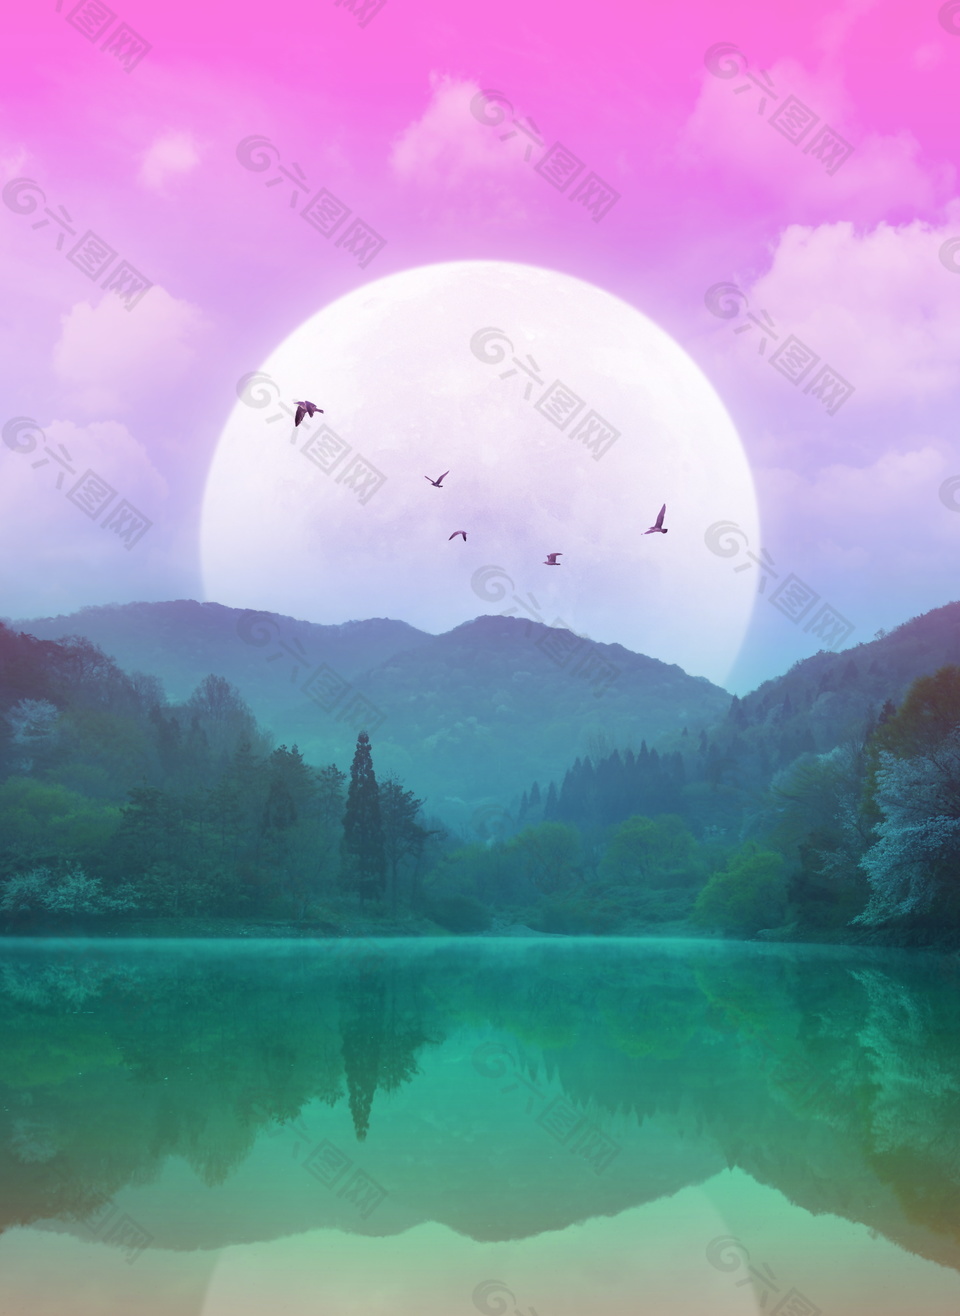 彩色圆月山水风景倒影背景素材